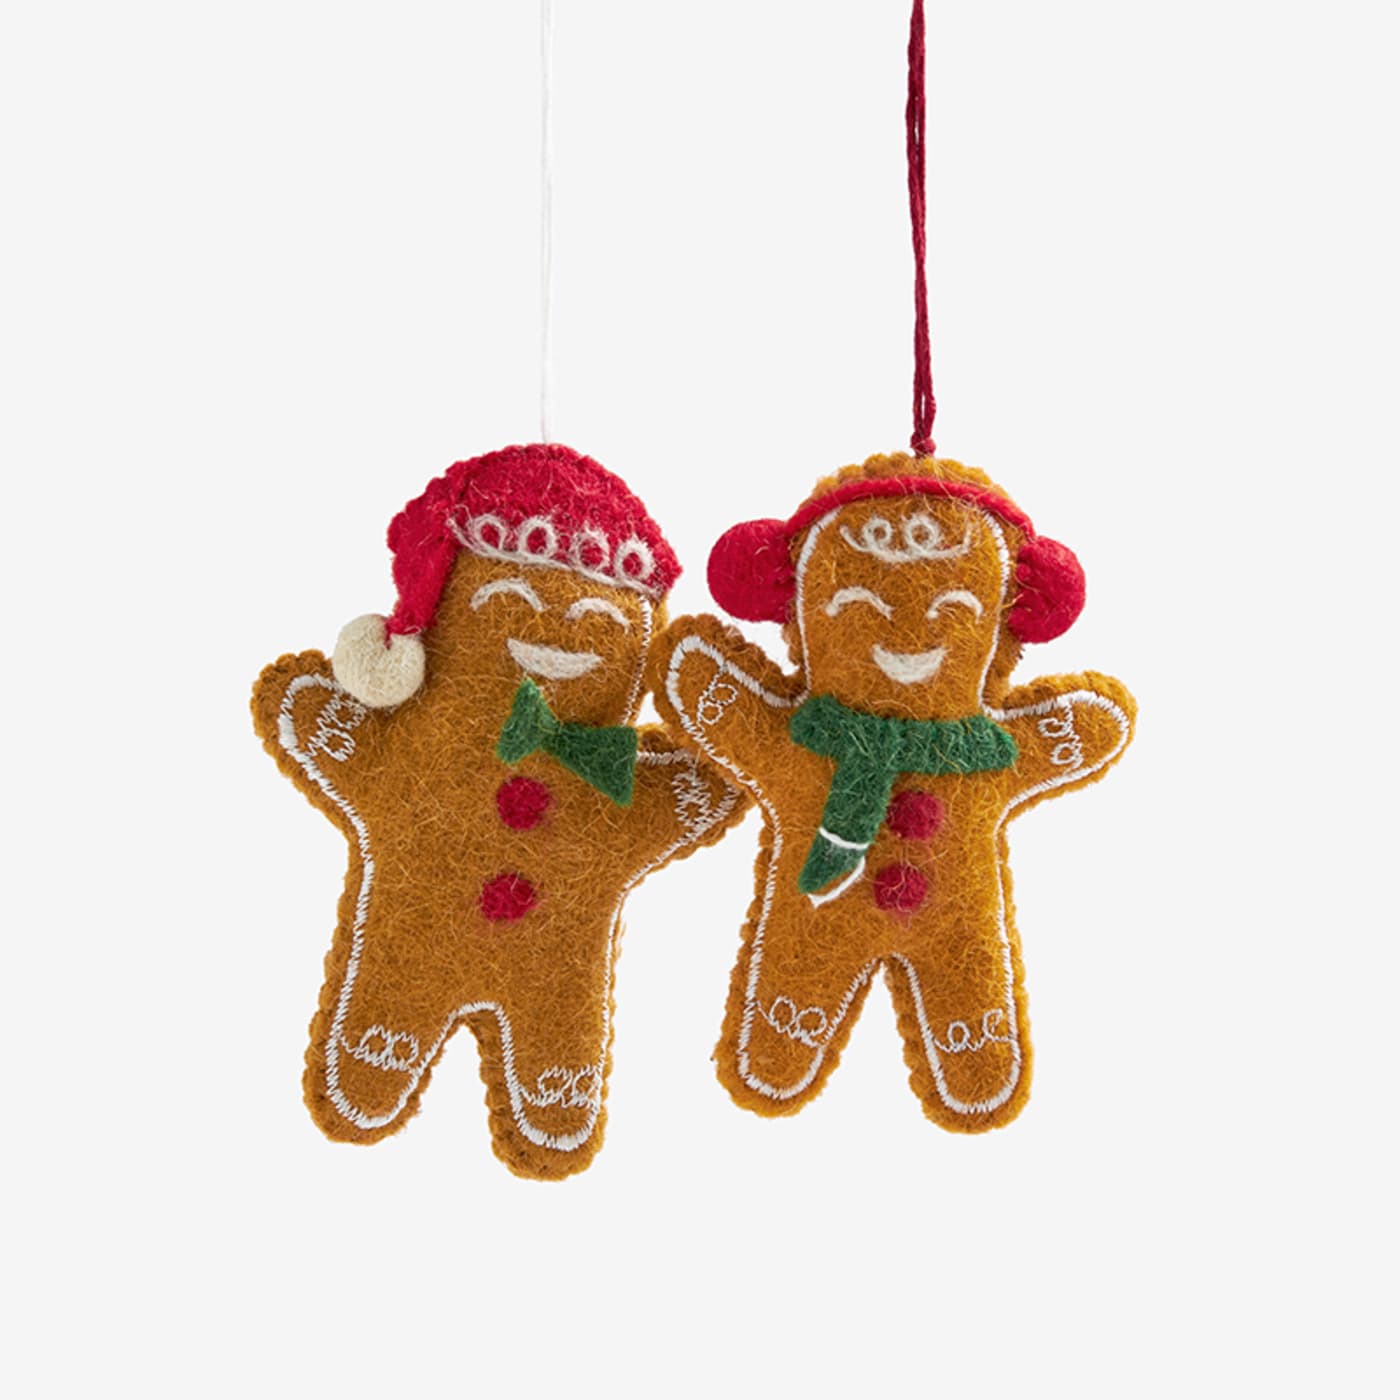 Holiday Felt Ornaments | The Company Store